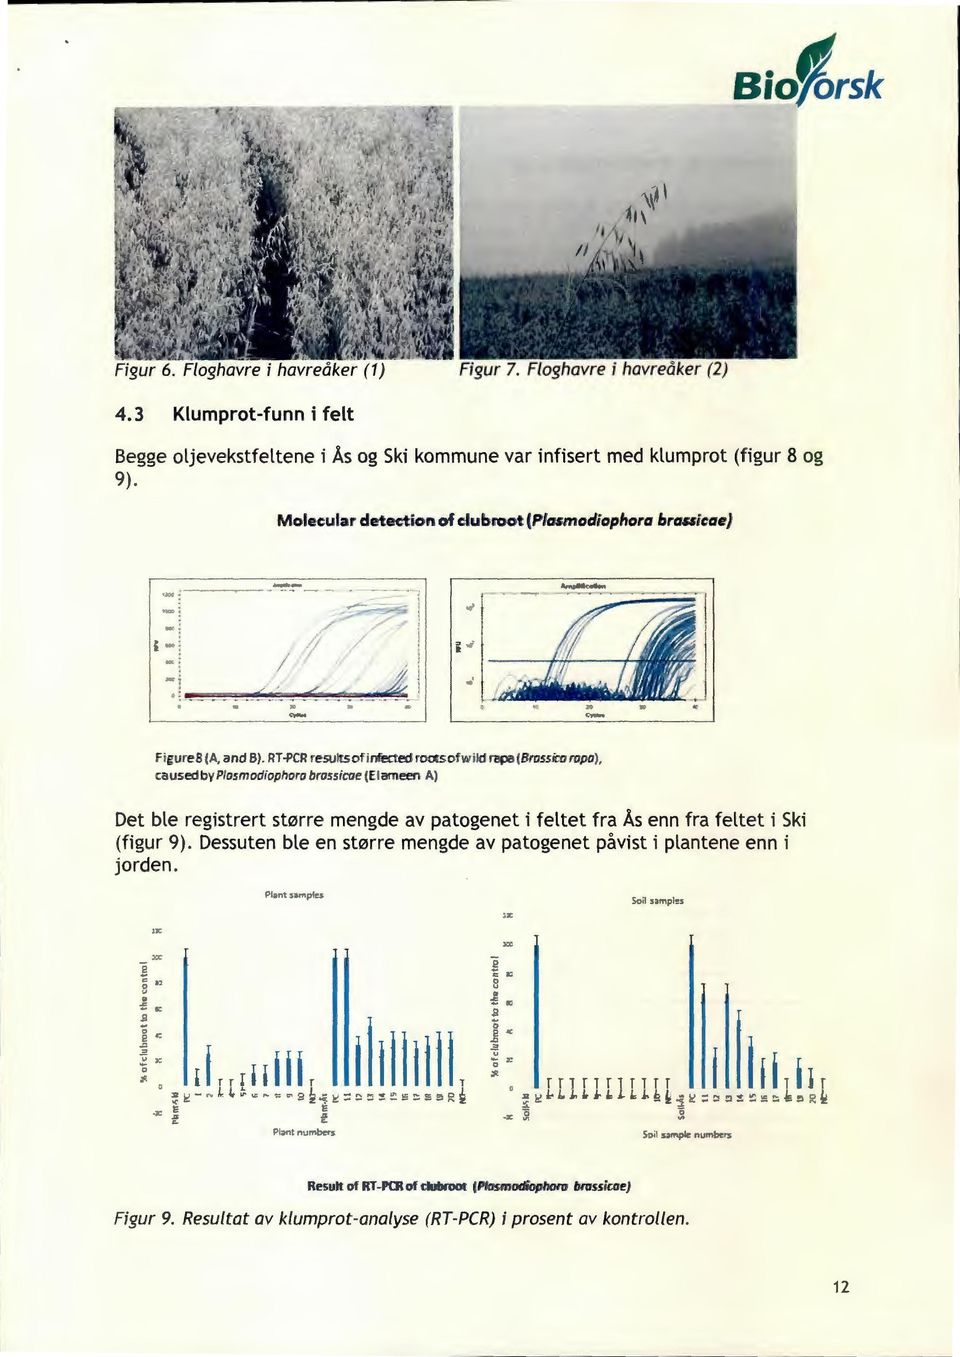 Co ropa), ca used by Plasmodiophora brassicae (El ameen A) Det ble registrert større mengde av patogenet i feltet fra Ås enn fra feltet i Ski (figur 9).